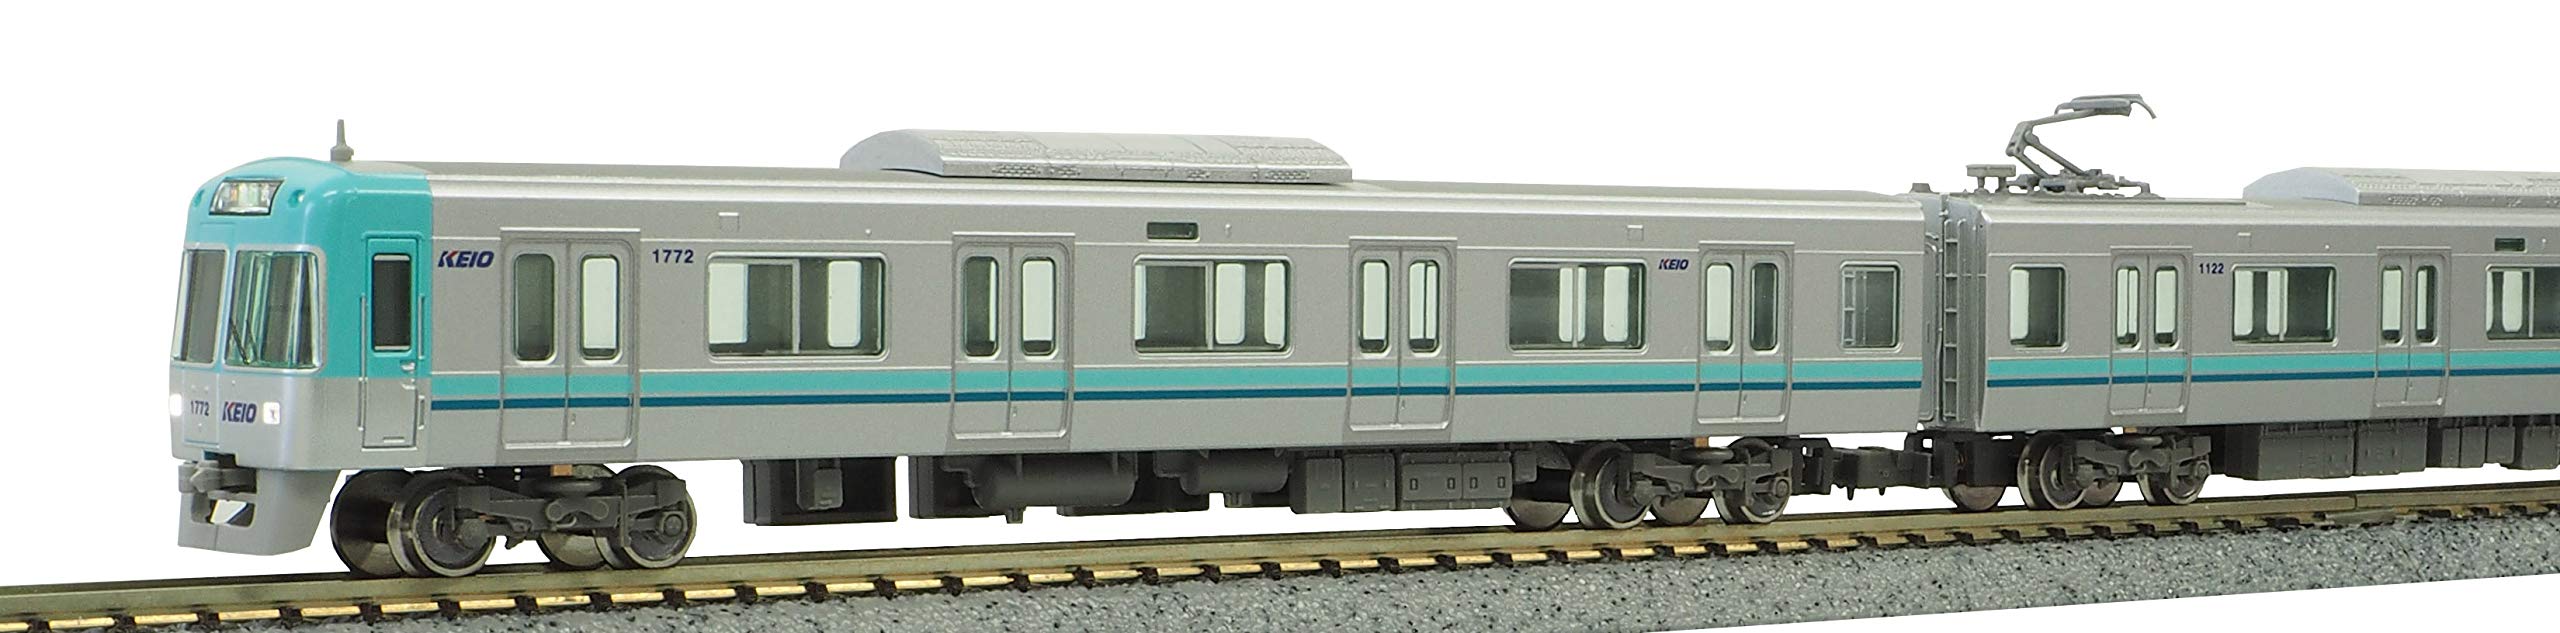 Green Max N Gauge Keio Series 1000 (5Th Car/Blue Green) 5-Car Set (With Power) 30892 Train Model Train